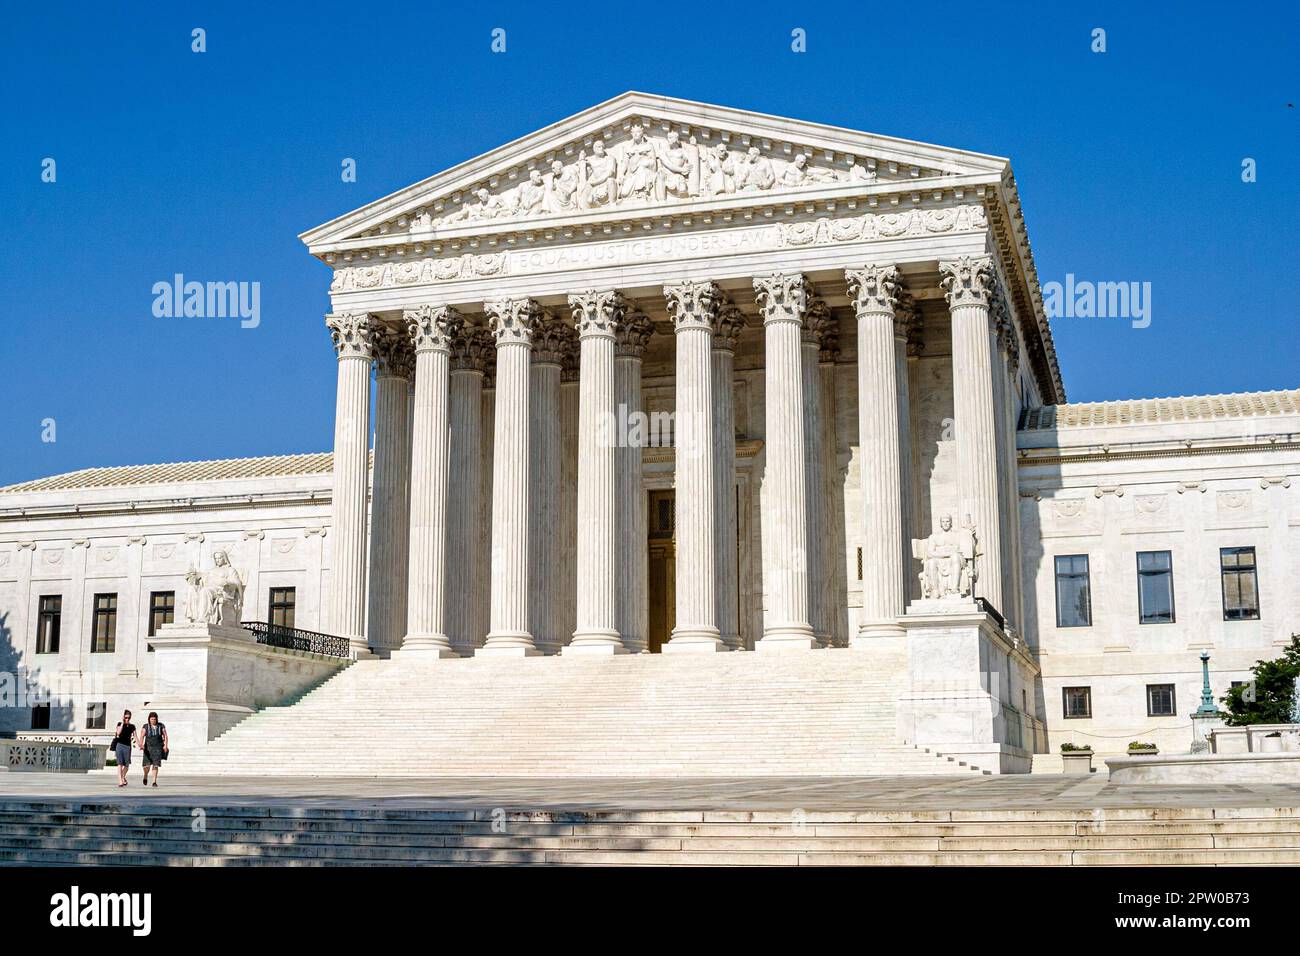 Washington DC, edificio de la Corte Suprema de los Estados Unidos, fuera de la entrada frontal escaleras columnas, Foto de stock